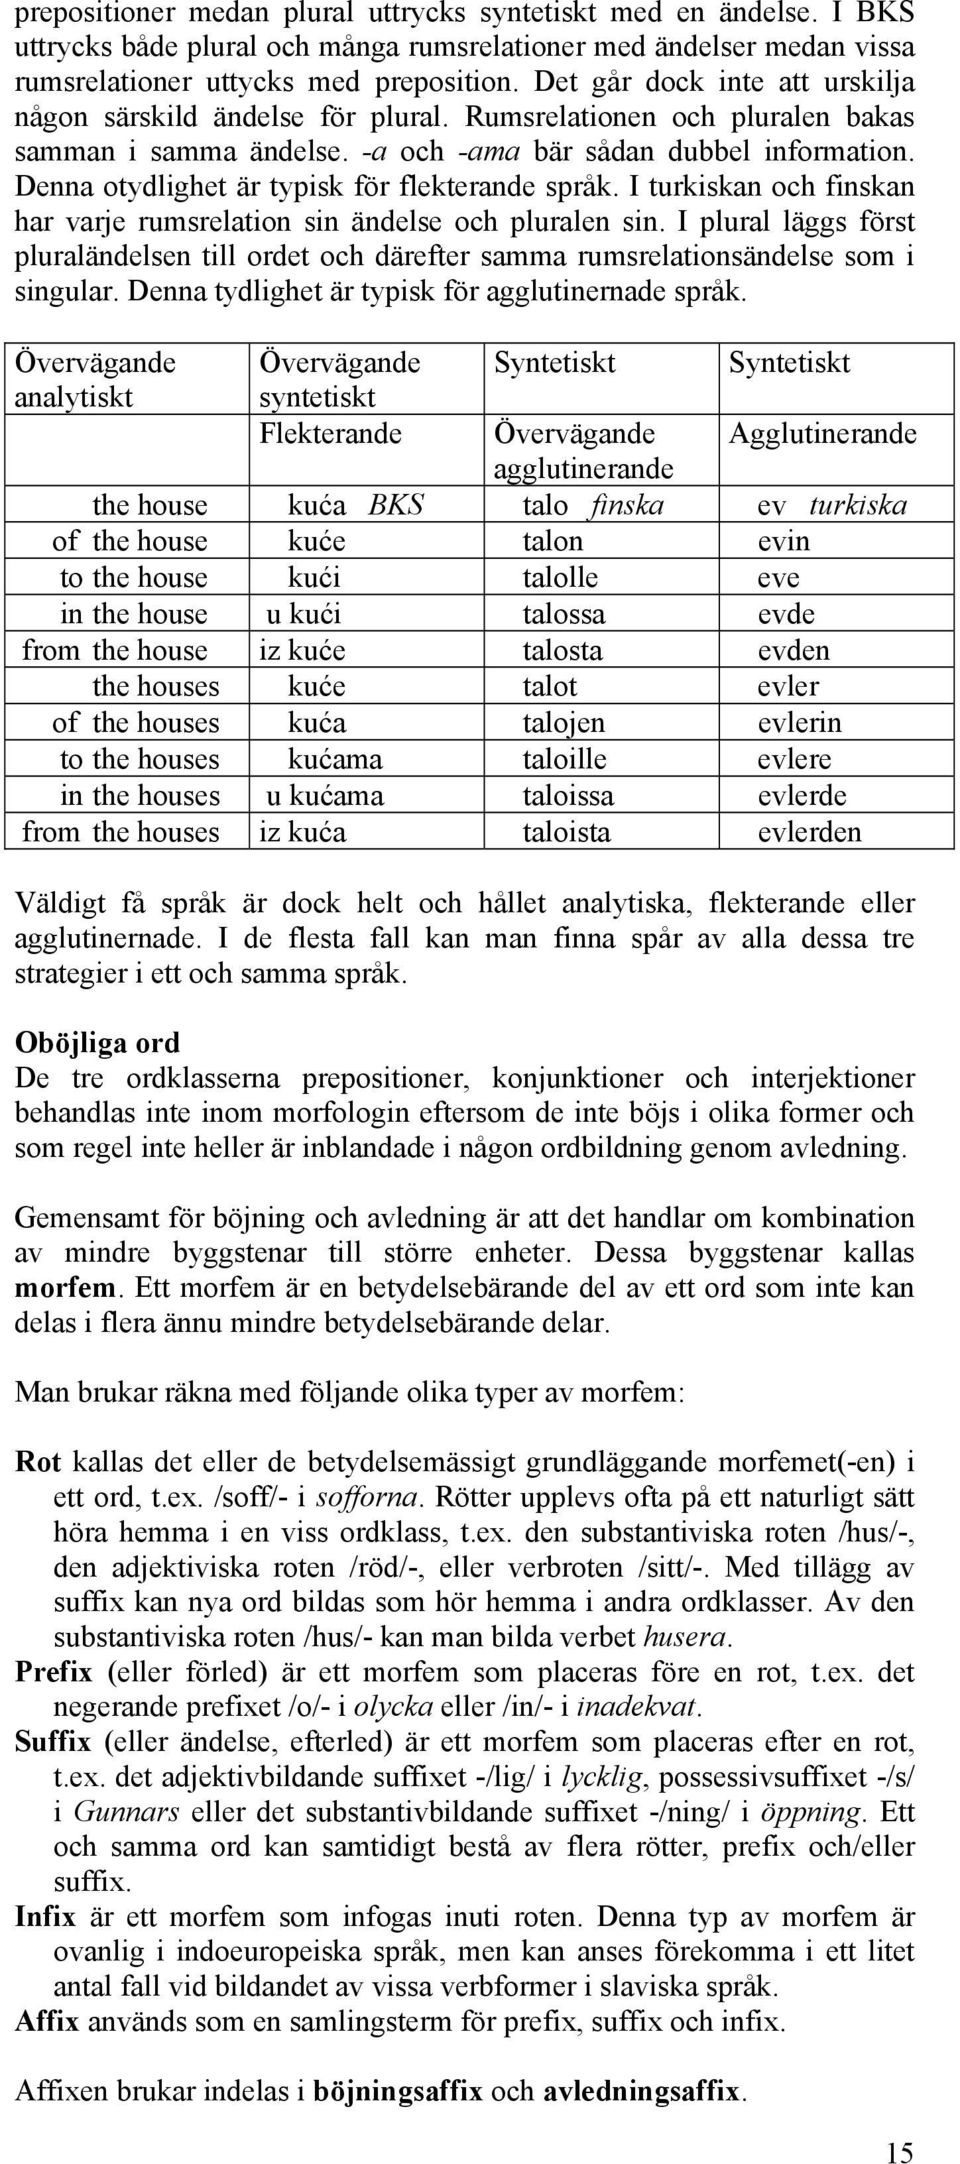 Denna otydlighet är typisk för flekterande språk. I turkiskan och finskan har varje rumsrelation sin ändelse och pluralen sin.